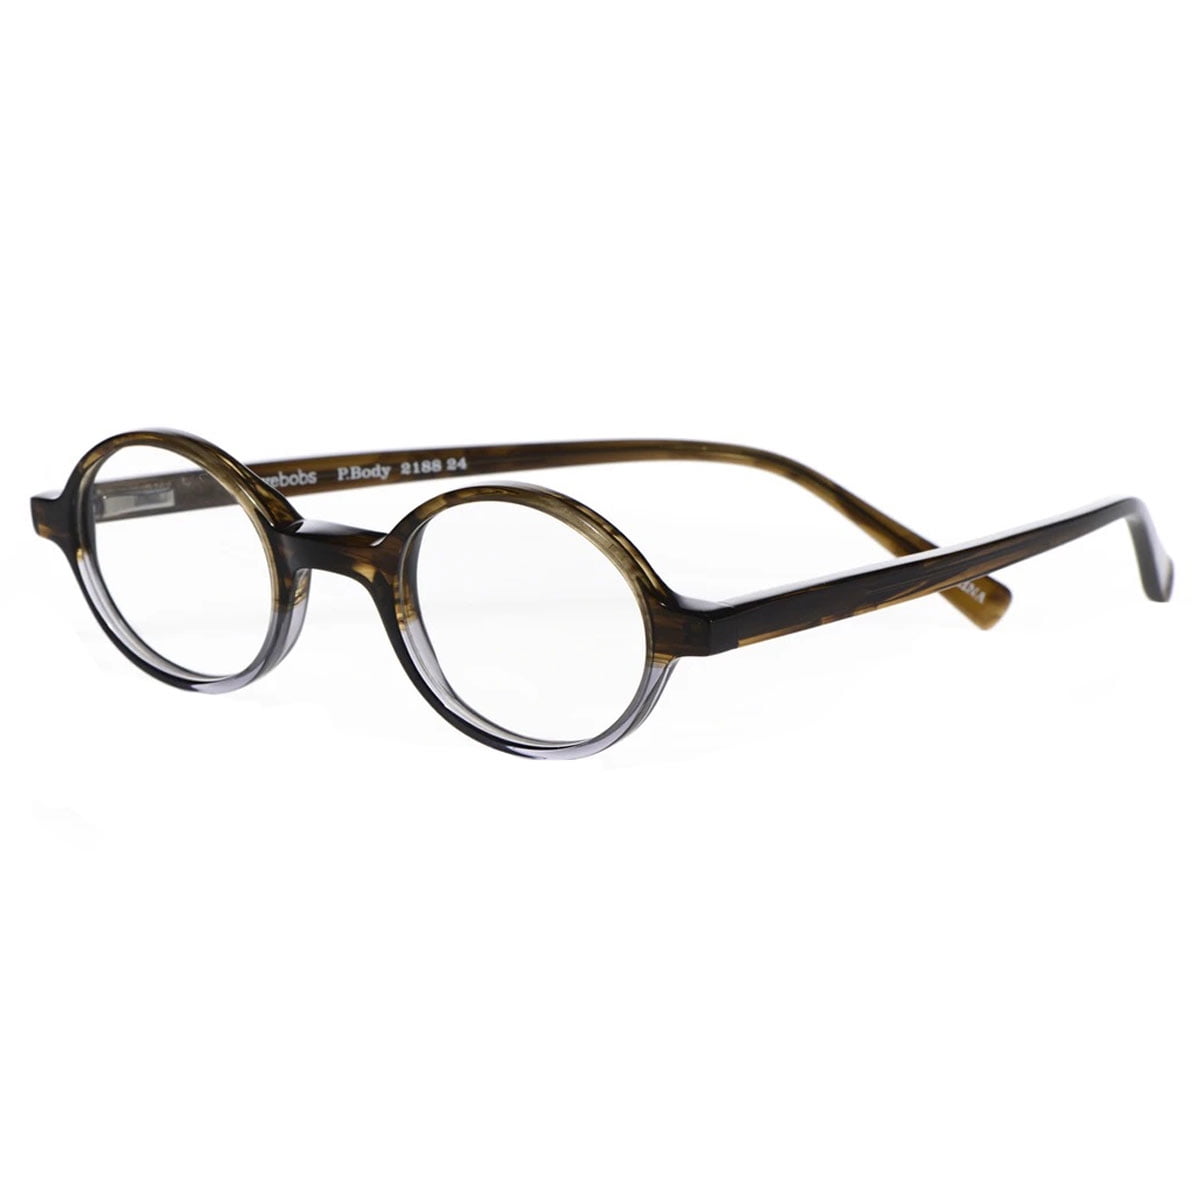 Eyebobs 2188 24 Unisex Pbody Round Frame Reading Glasses 225 